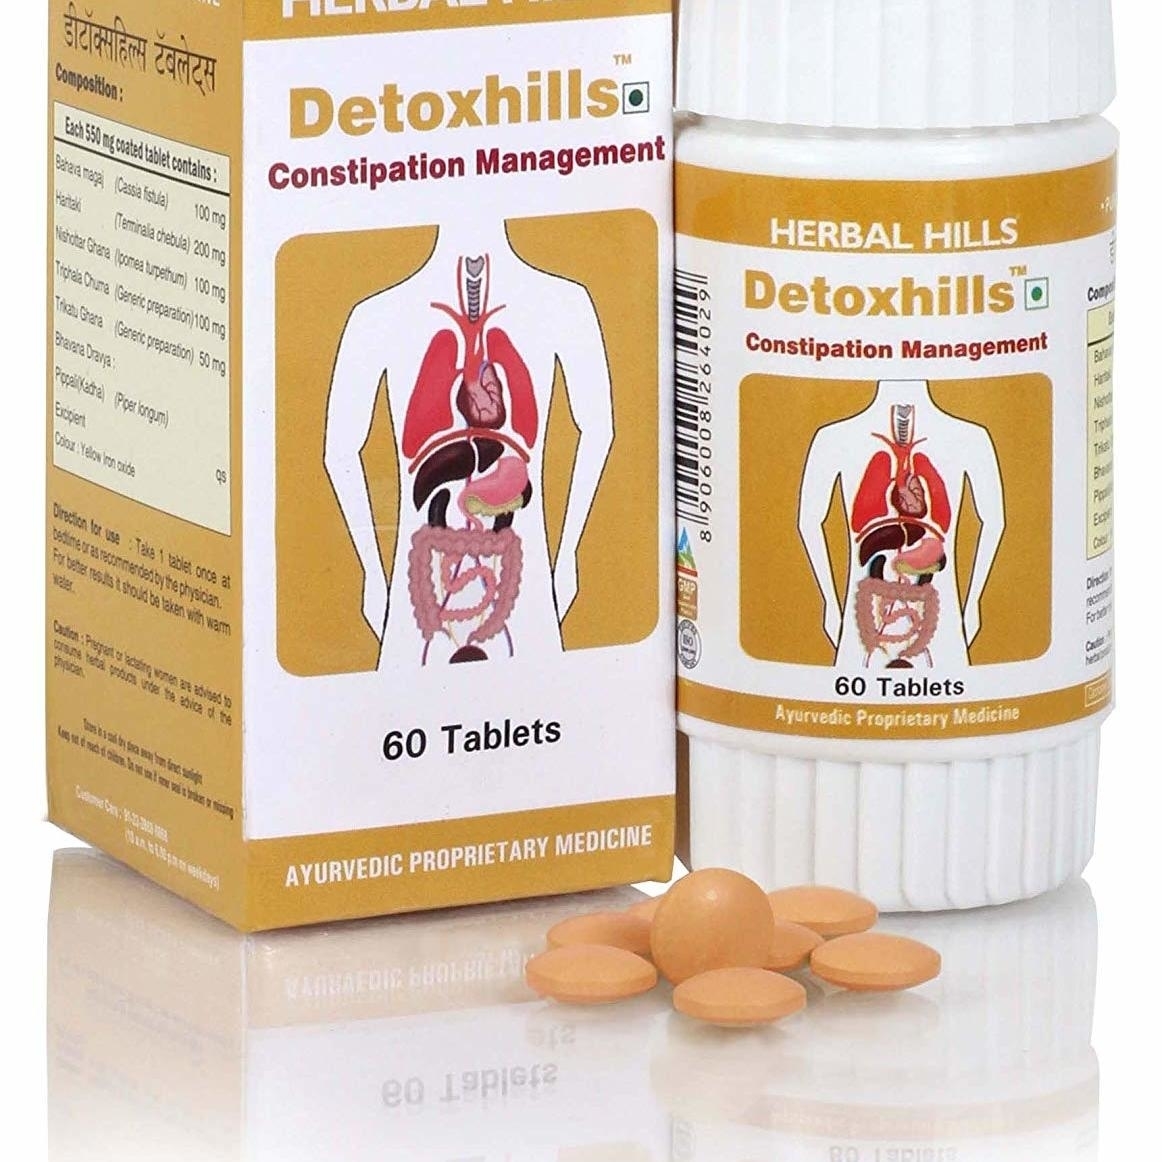 Herbal Hills Detoxhills Constipation Management 60 Tablets